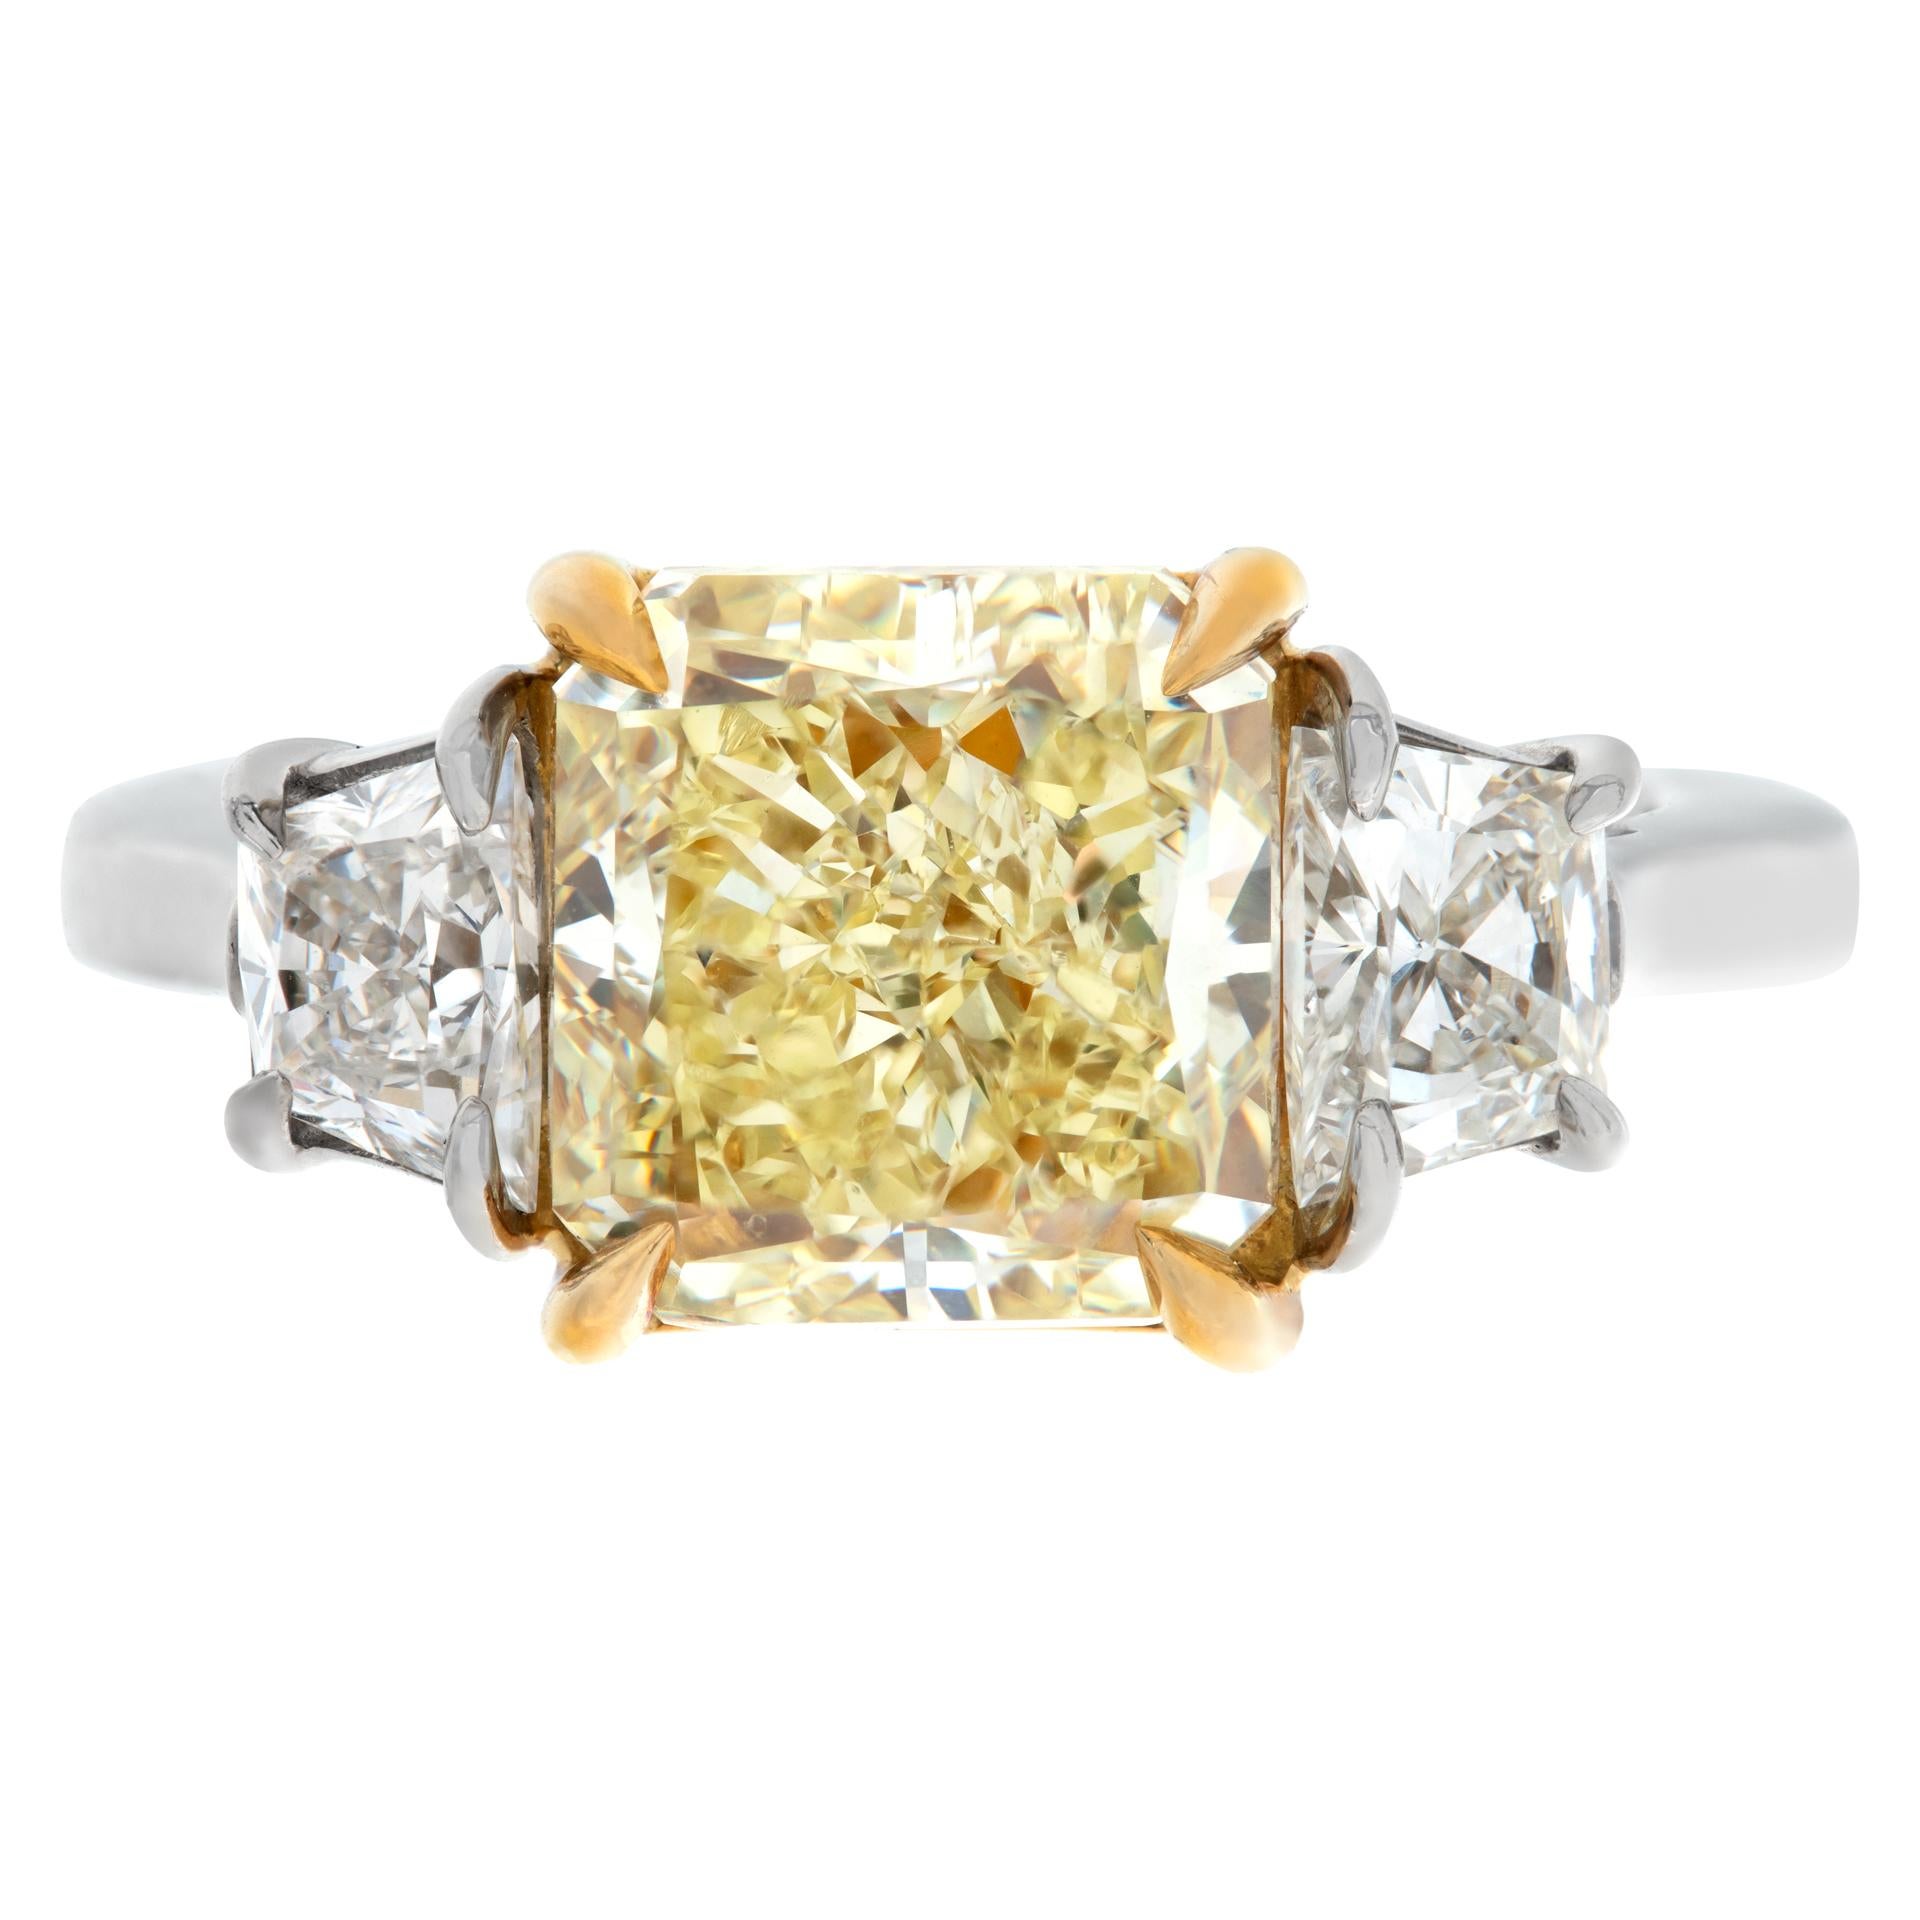 GIA-zertifiziert 4,00 Karat Natural Fancy Yellow Even, Cut Cornered Square Modified Brilliant Diamond, VS2 Klarheit, Ring in Platin und 18K Gelbgold. 2 trapezförmige Diamanten auf jeder Seite, 0,88 Karat Gesamtgewicht, Schätzung: G-H, SI Klarheit.